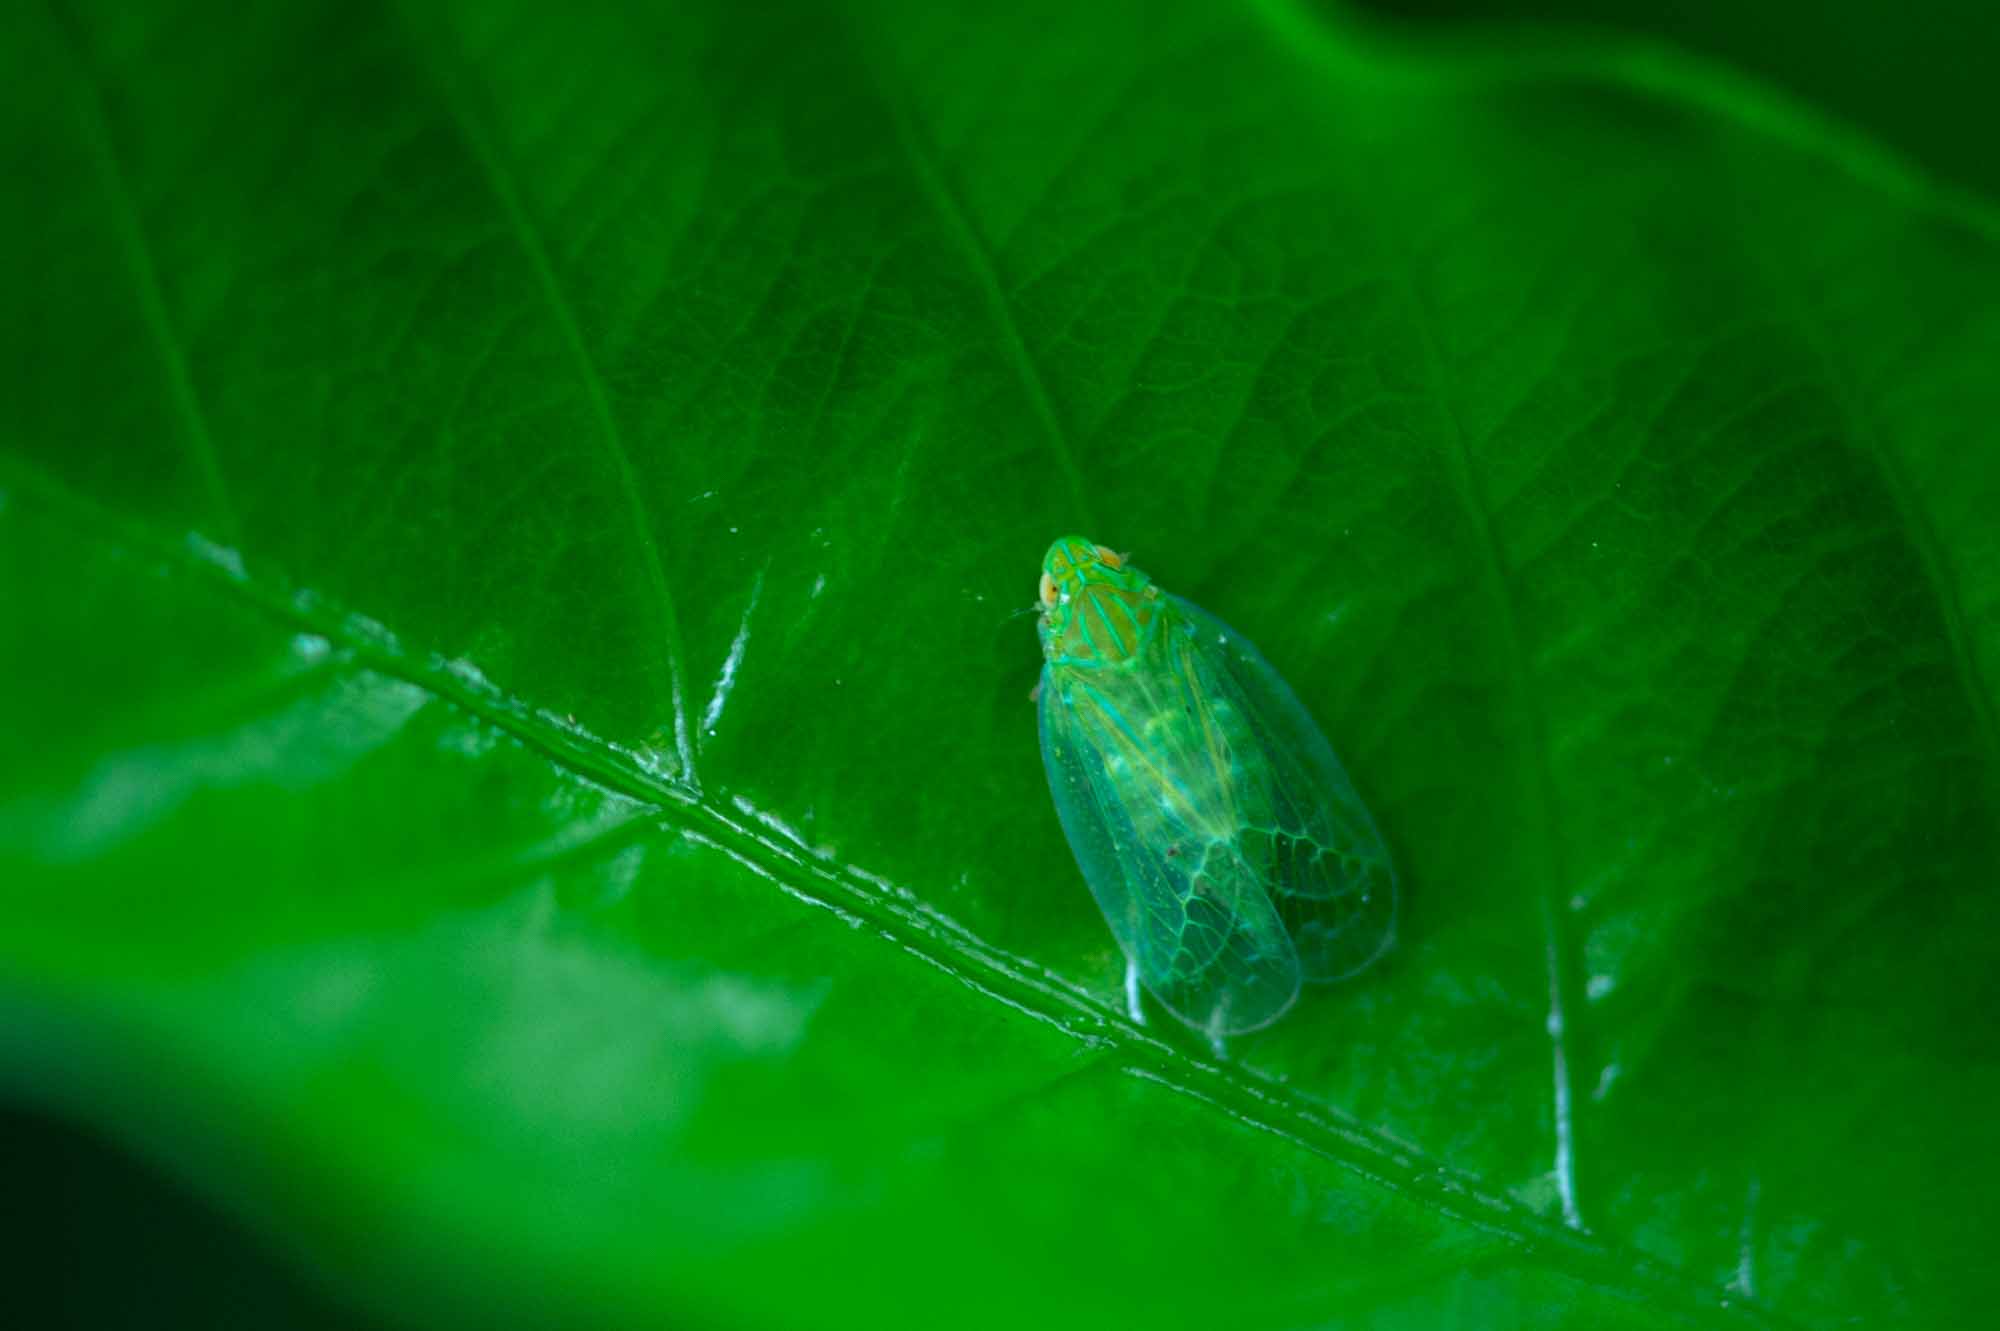 ミドリグンバイウンカ 虫の写真と生態なら昆虫写真図鑑 ムシミル